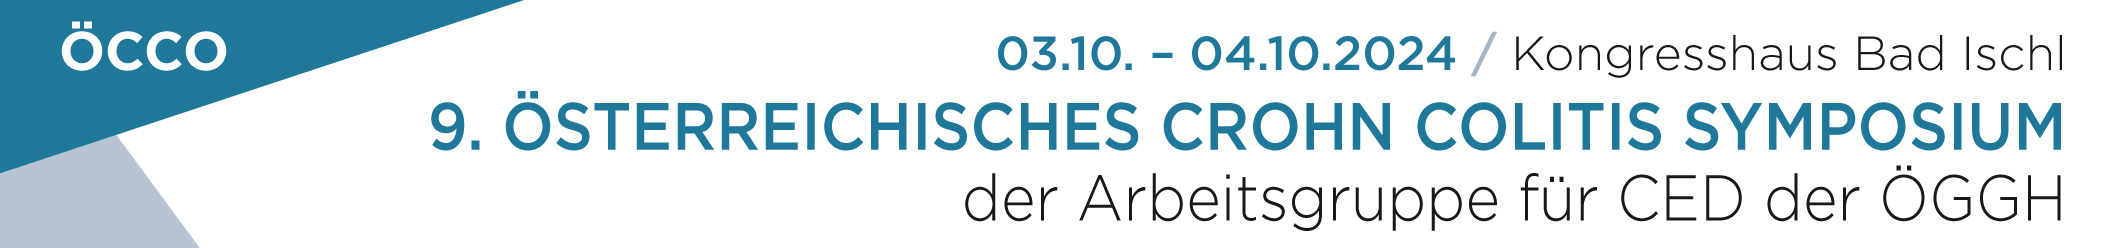 9. Österreichisches Crohn Colitis Symposium der Arbeitsgruppe für CED der ÖGGH